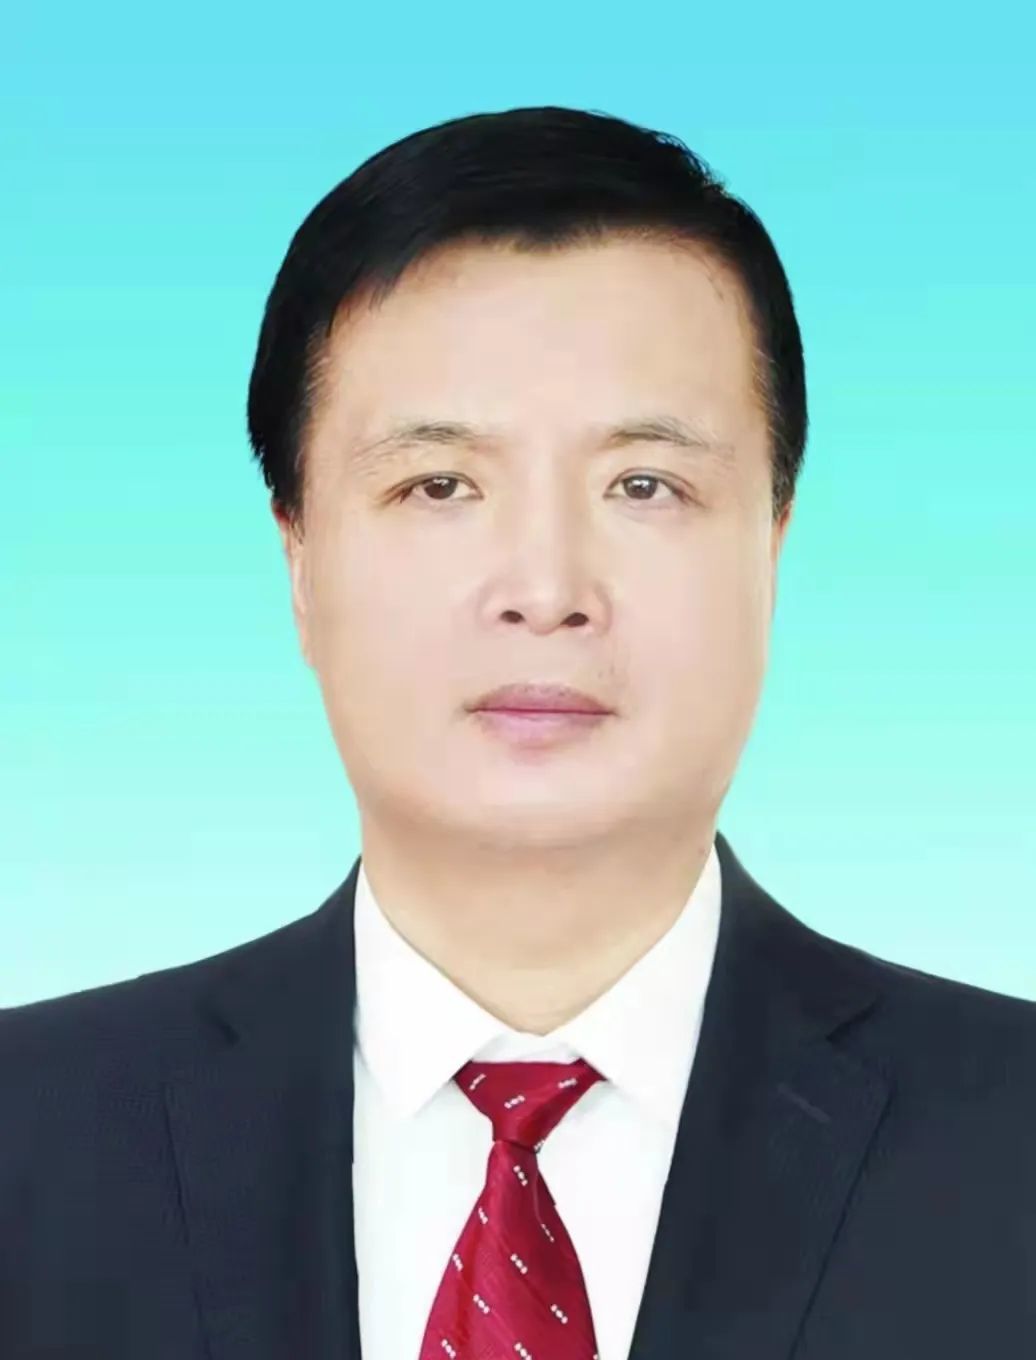 绥化经济技术开发区管委会原主任戴文涛主动投案接受纪律审查和监察调查